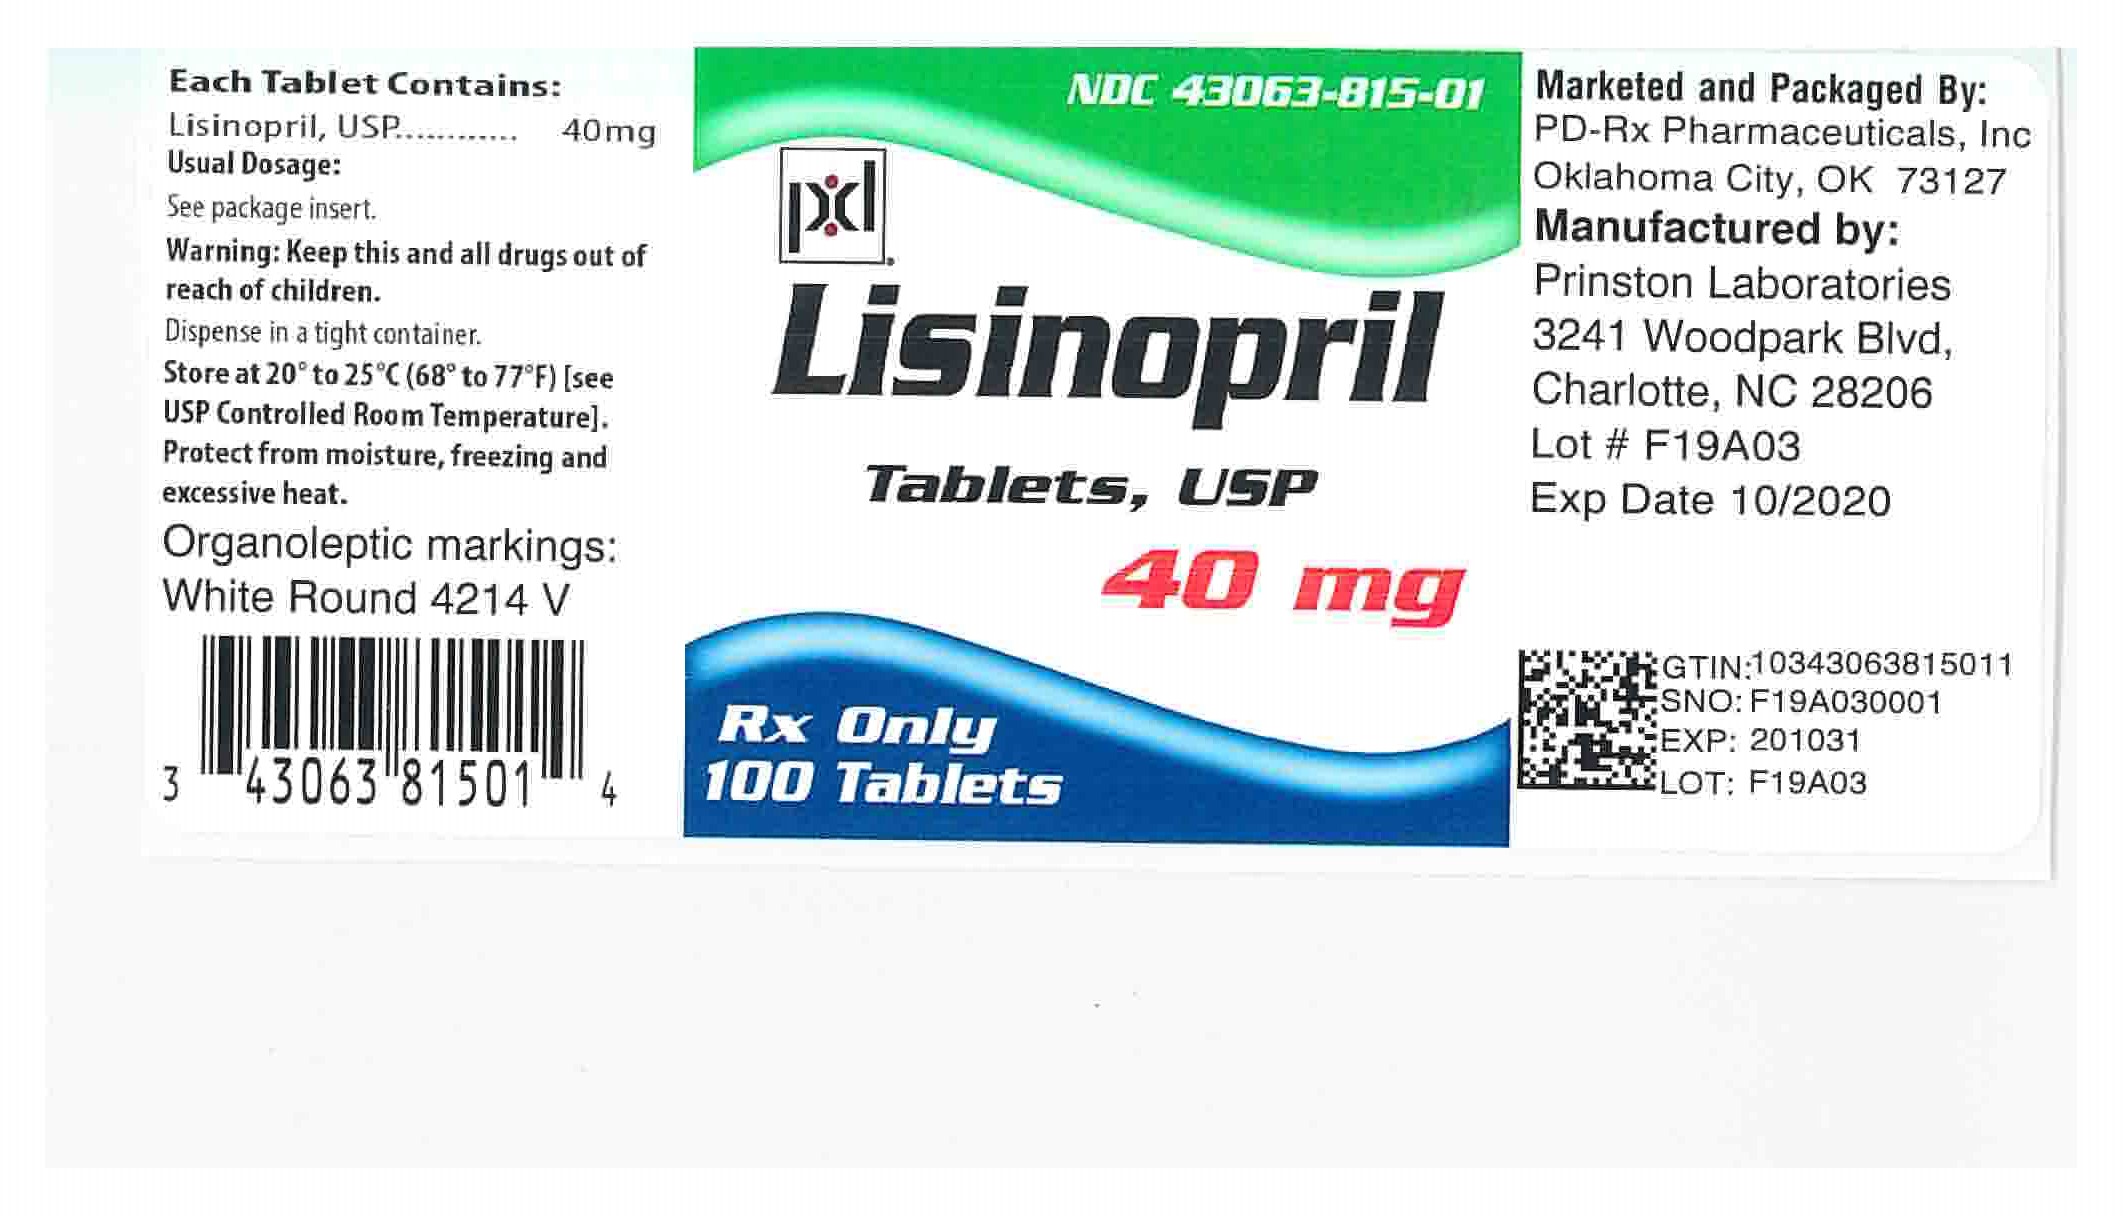 43063815 Label 40 mg